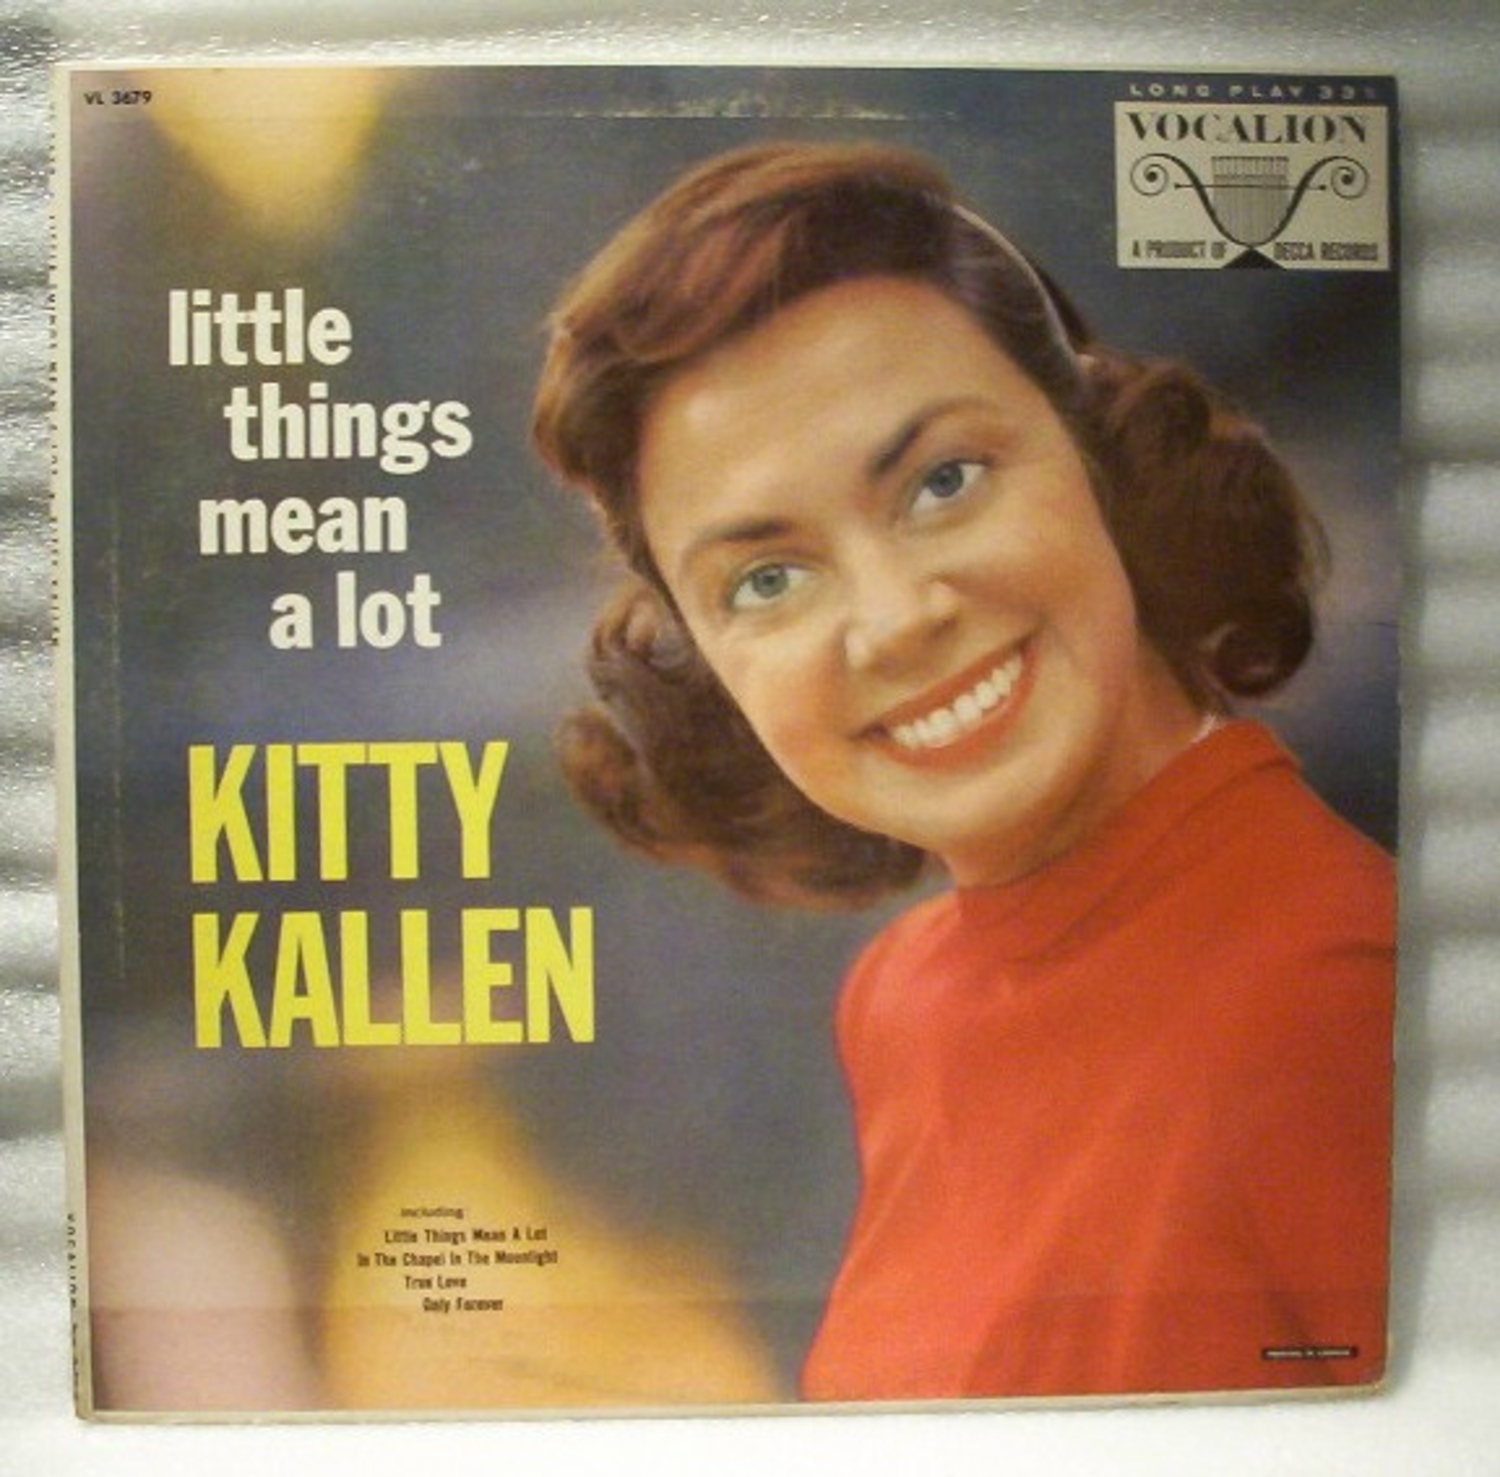 Kitty Kallen - Wikipedia